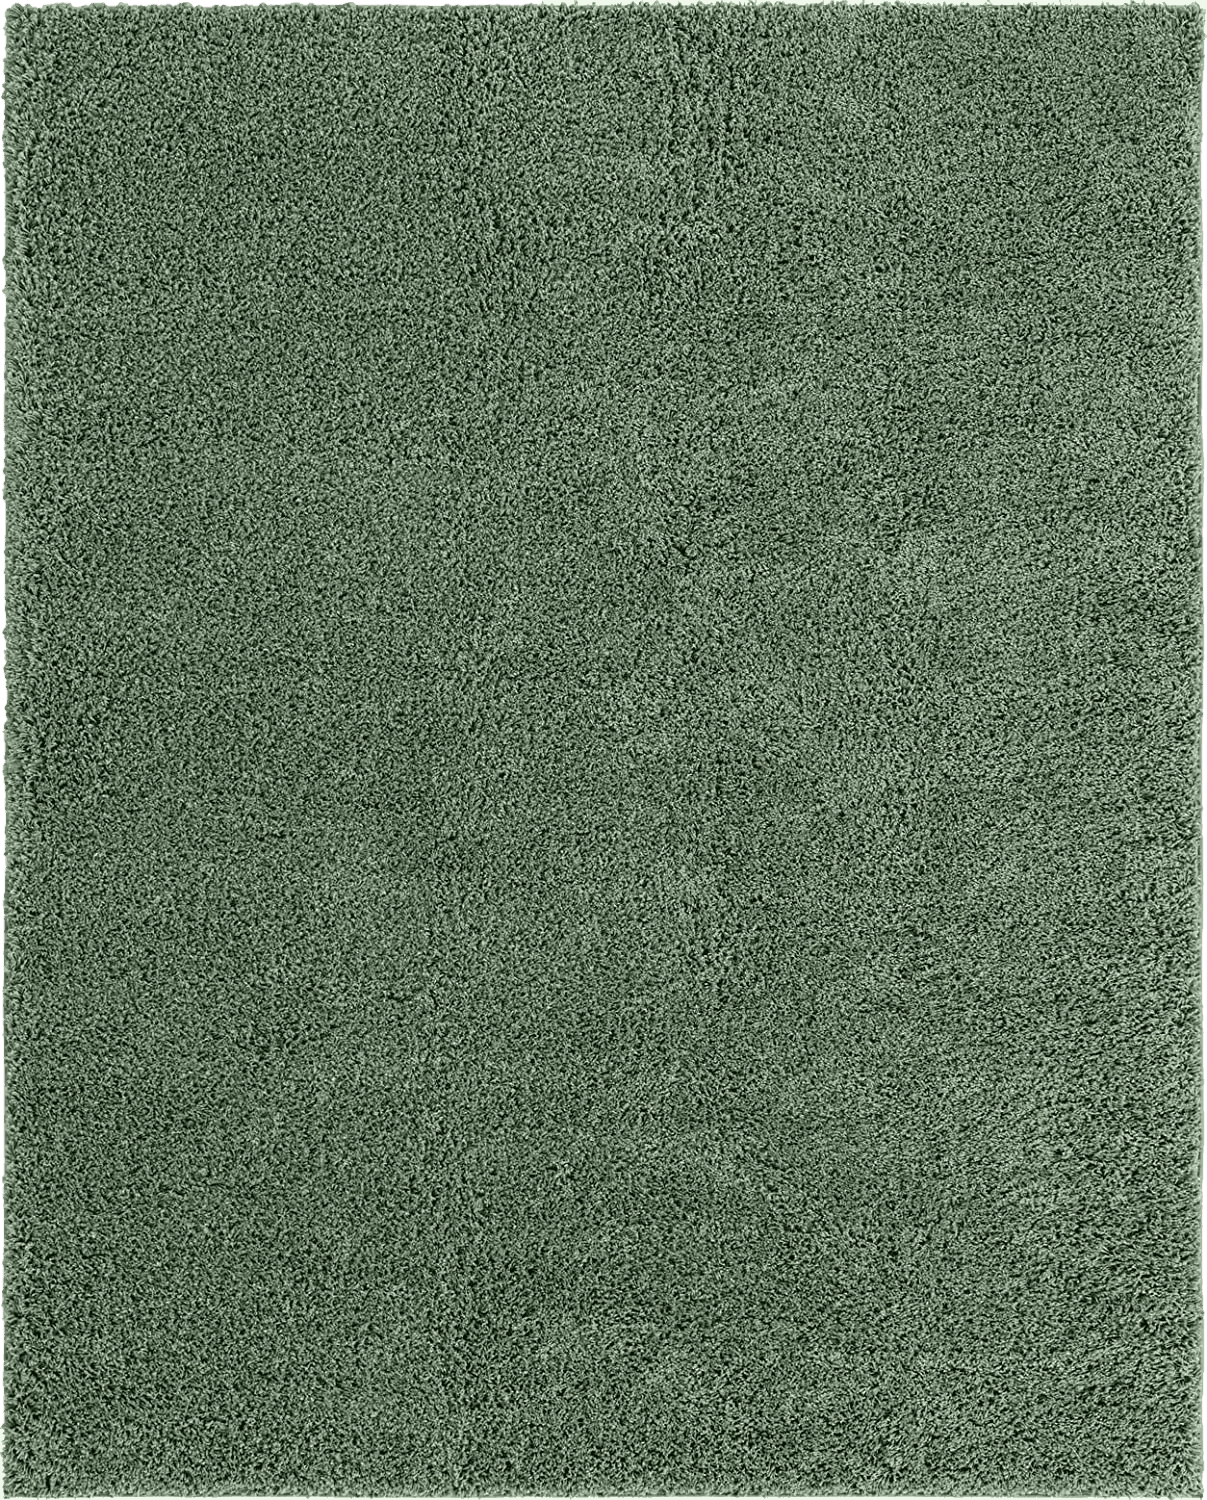 Fluffy Green 8x10 Green fluffy rug